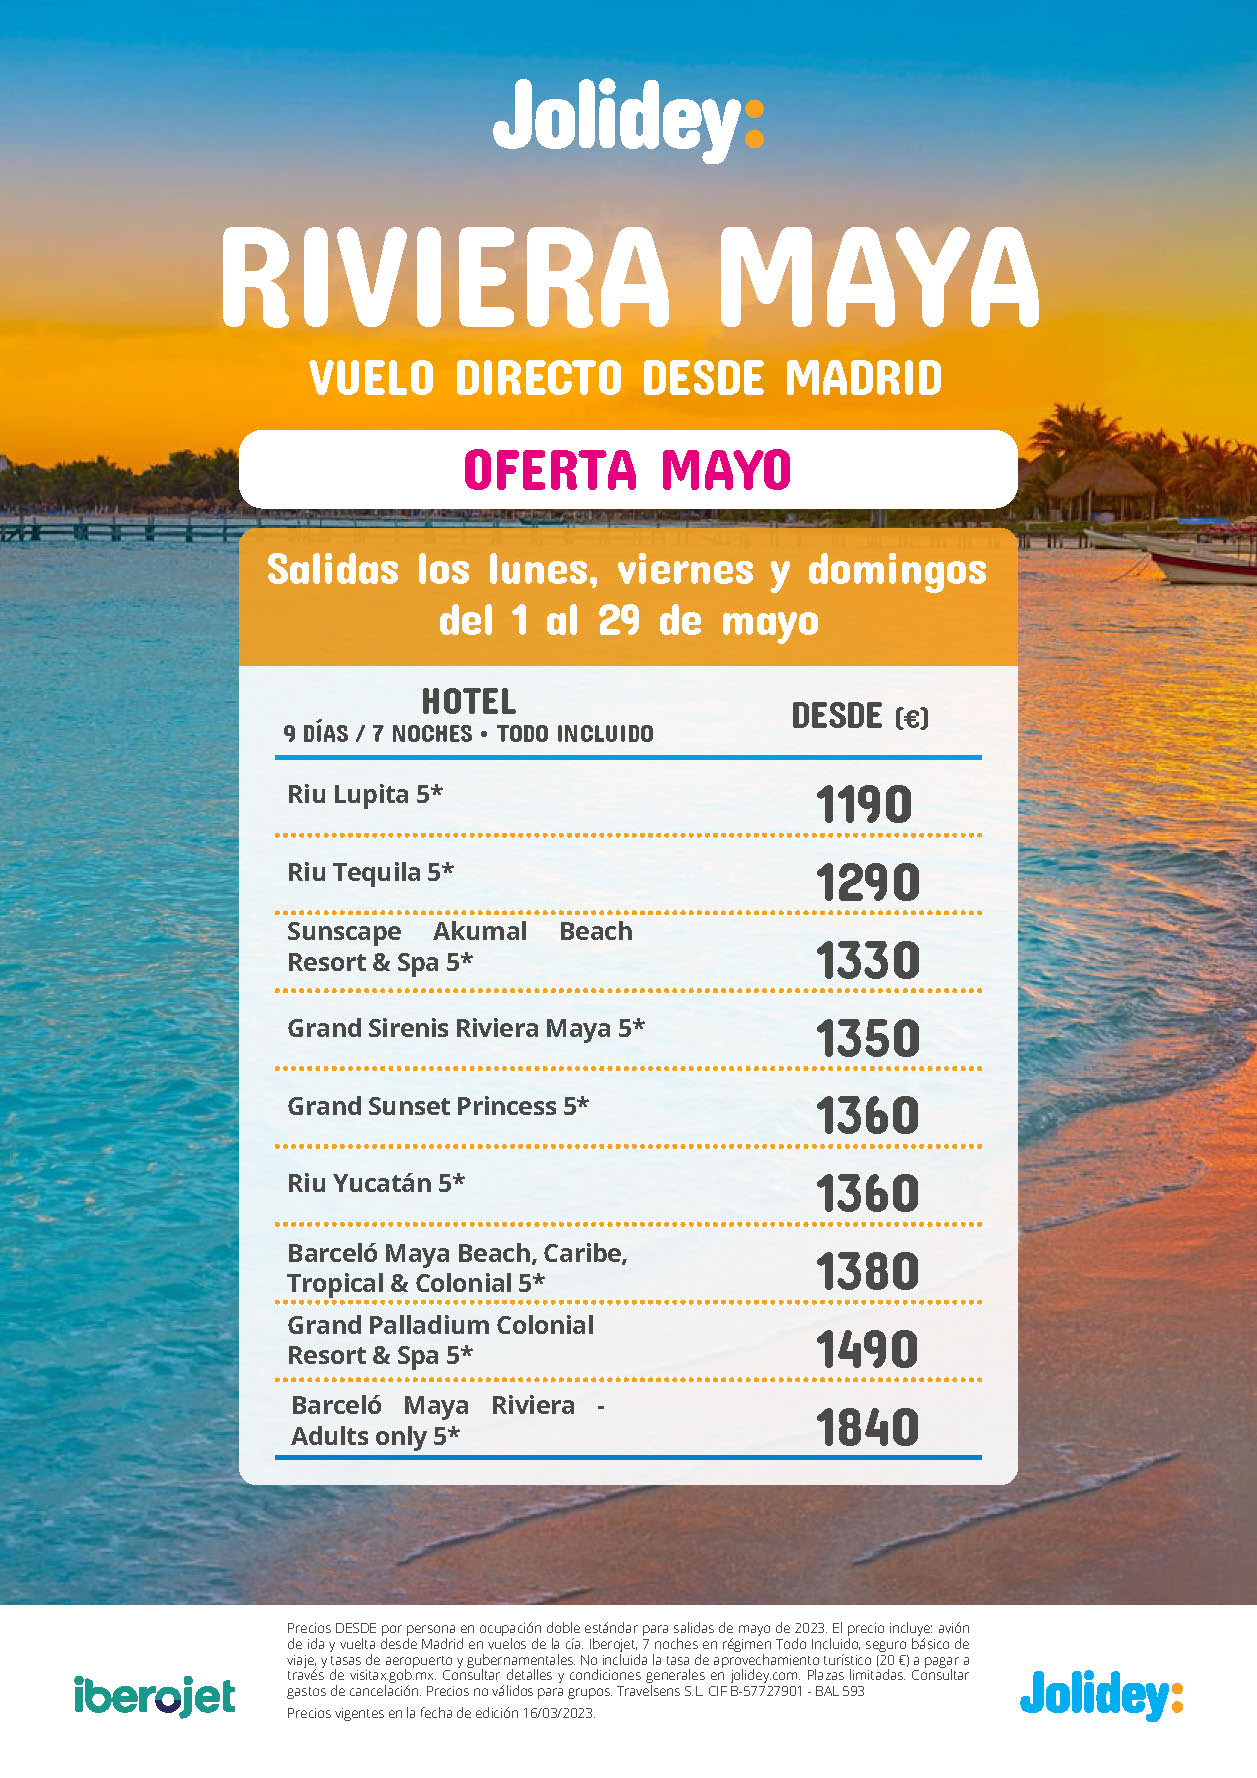 Oferta Jolidey Mayo 2023 Estancia en Riviera Maya Mexico 9 dias Todo Incluido salida en vuelo directo desde Madrid